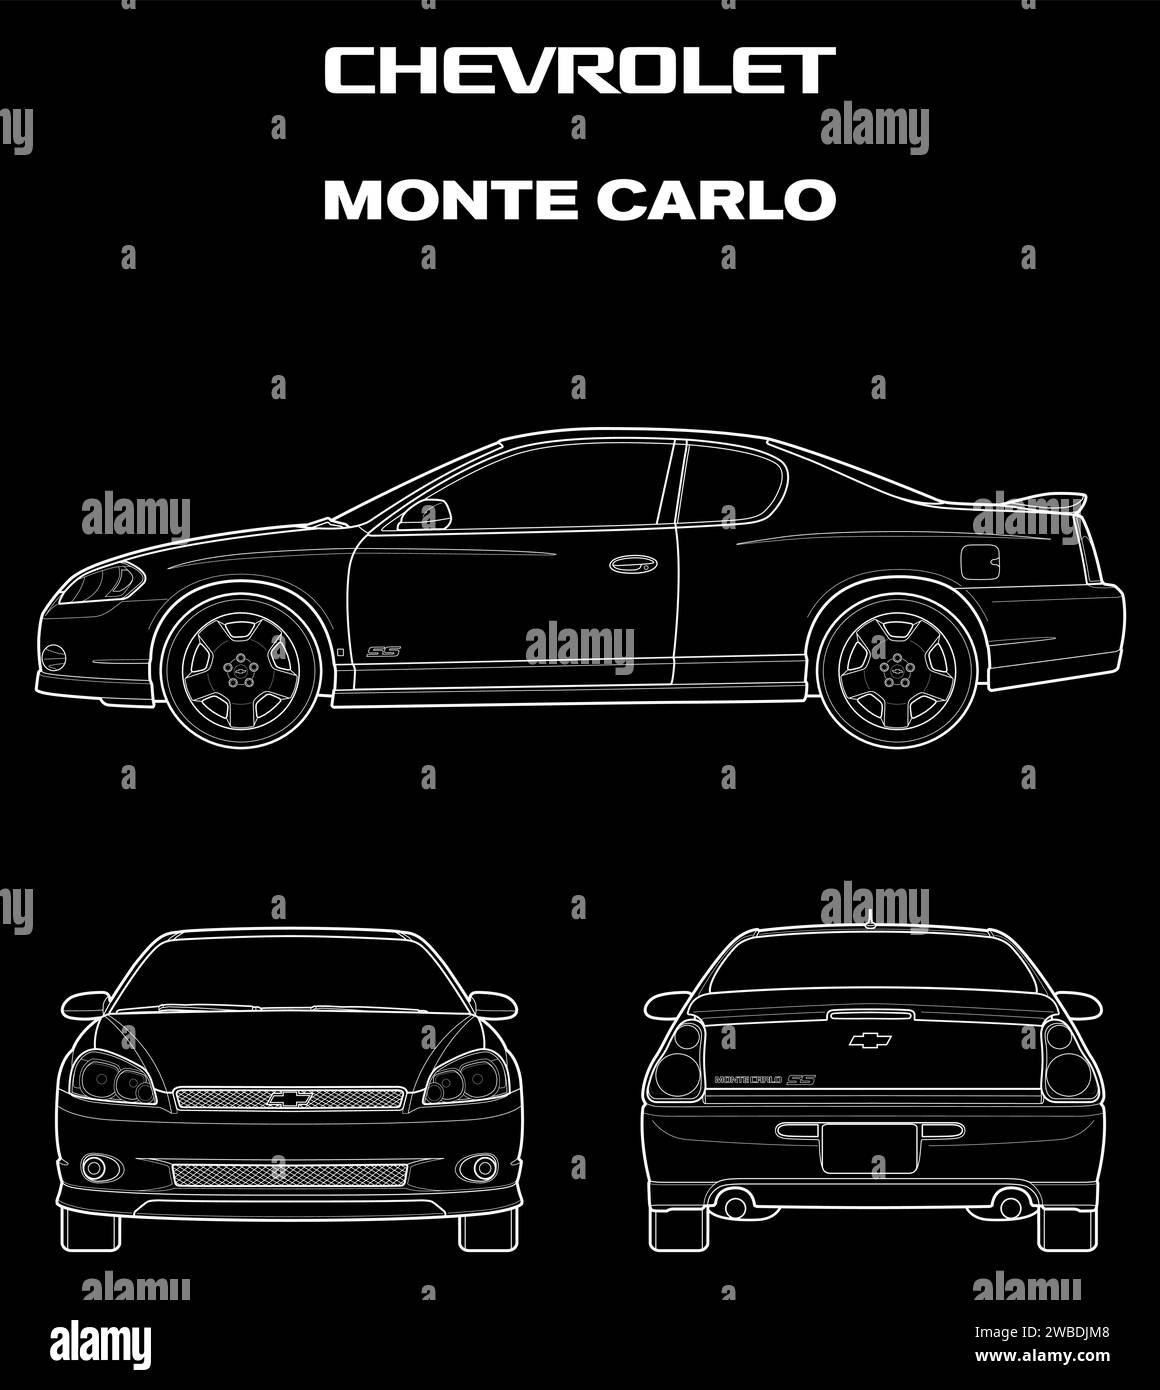 2005 modello di auto Chevrolet Monte Carlo Illustrazione Vettoriale